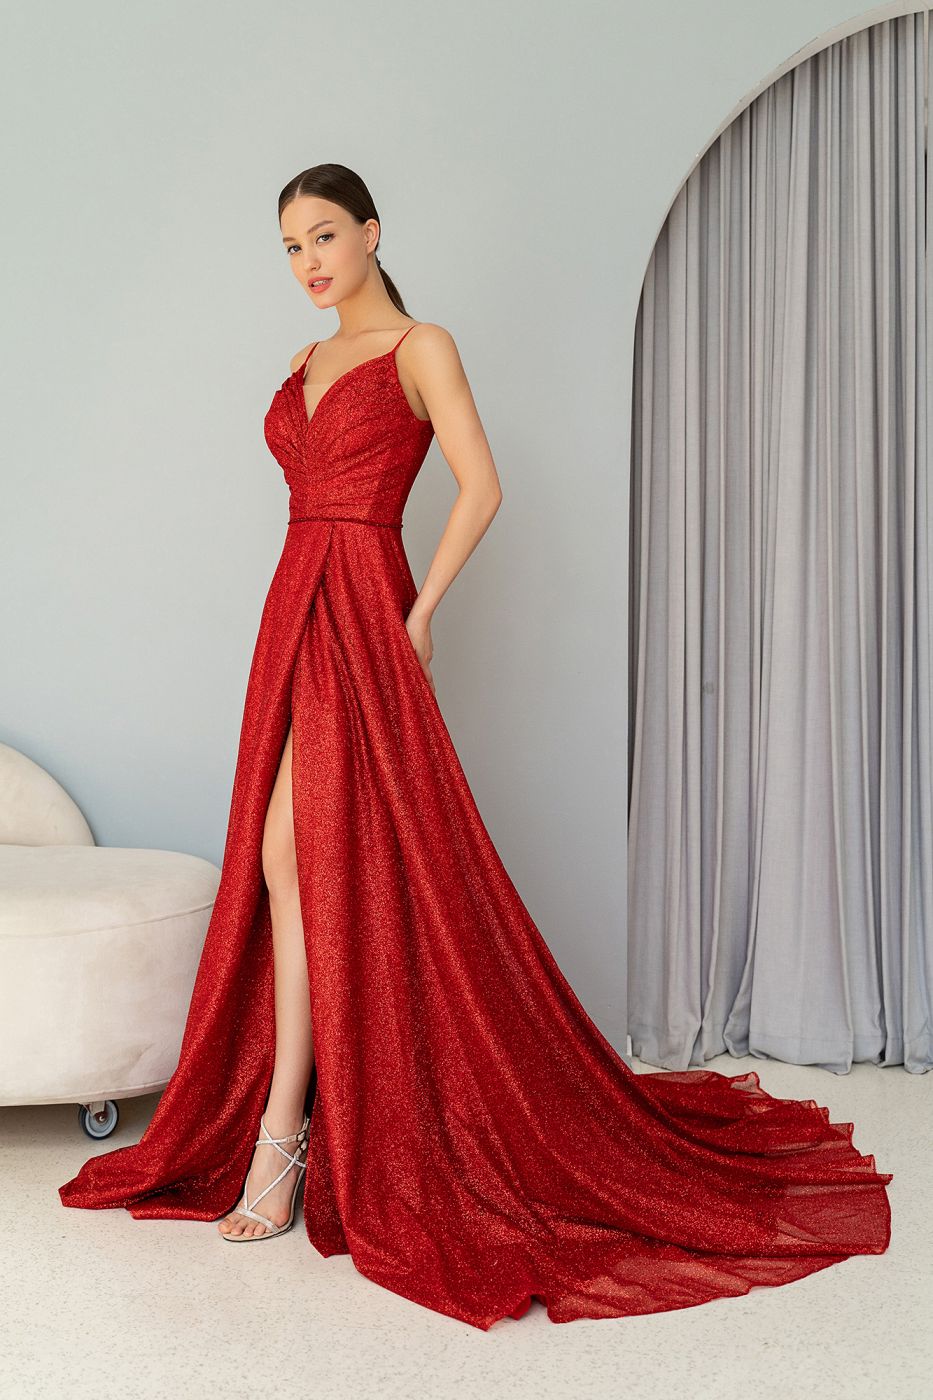 Длинное струящееся платье из черной и красной шелковой ткани Арт. 562